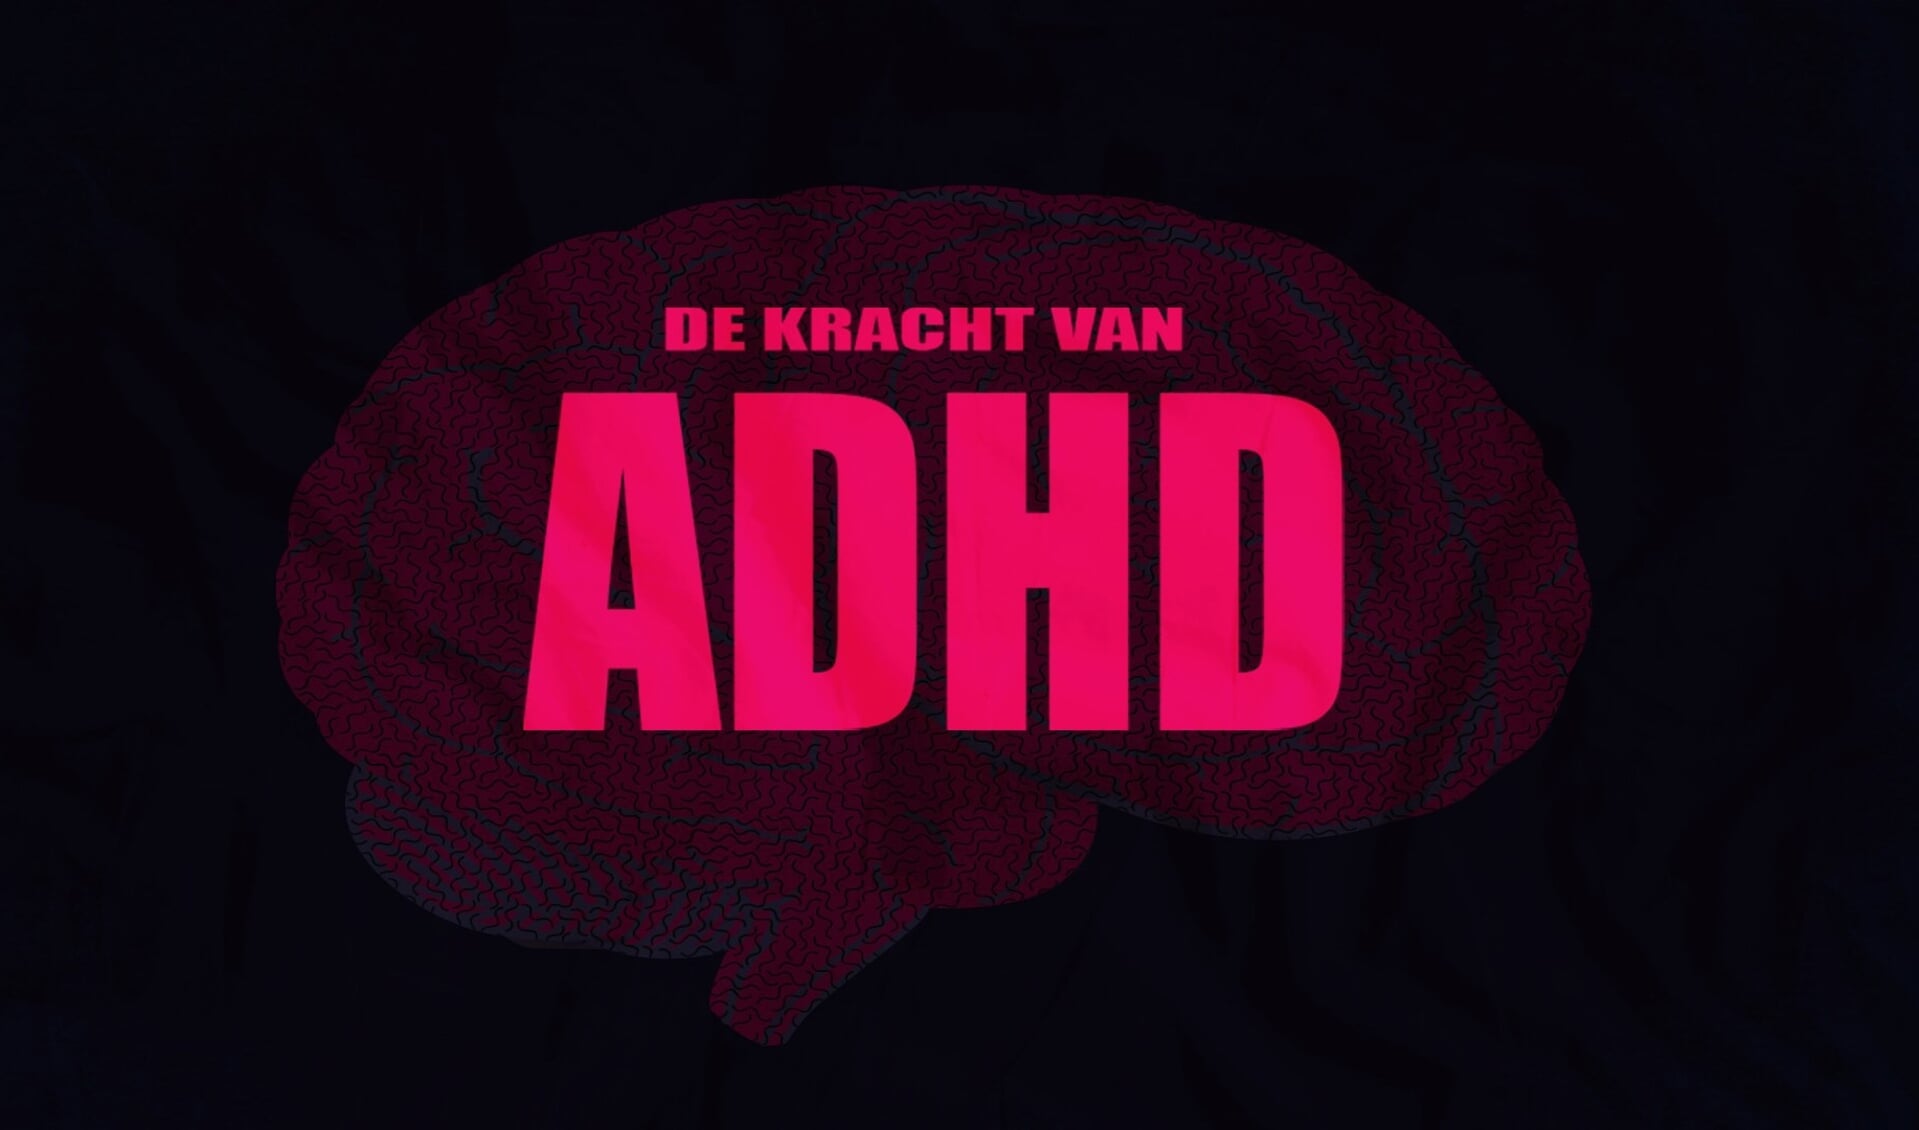 De kracht van ADHD